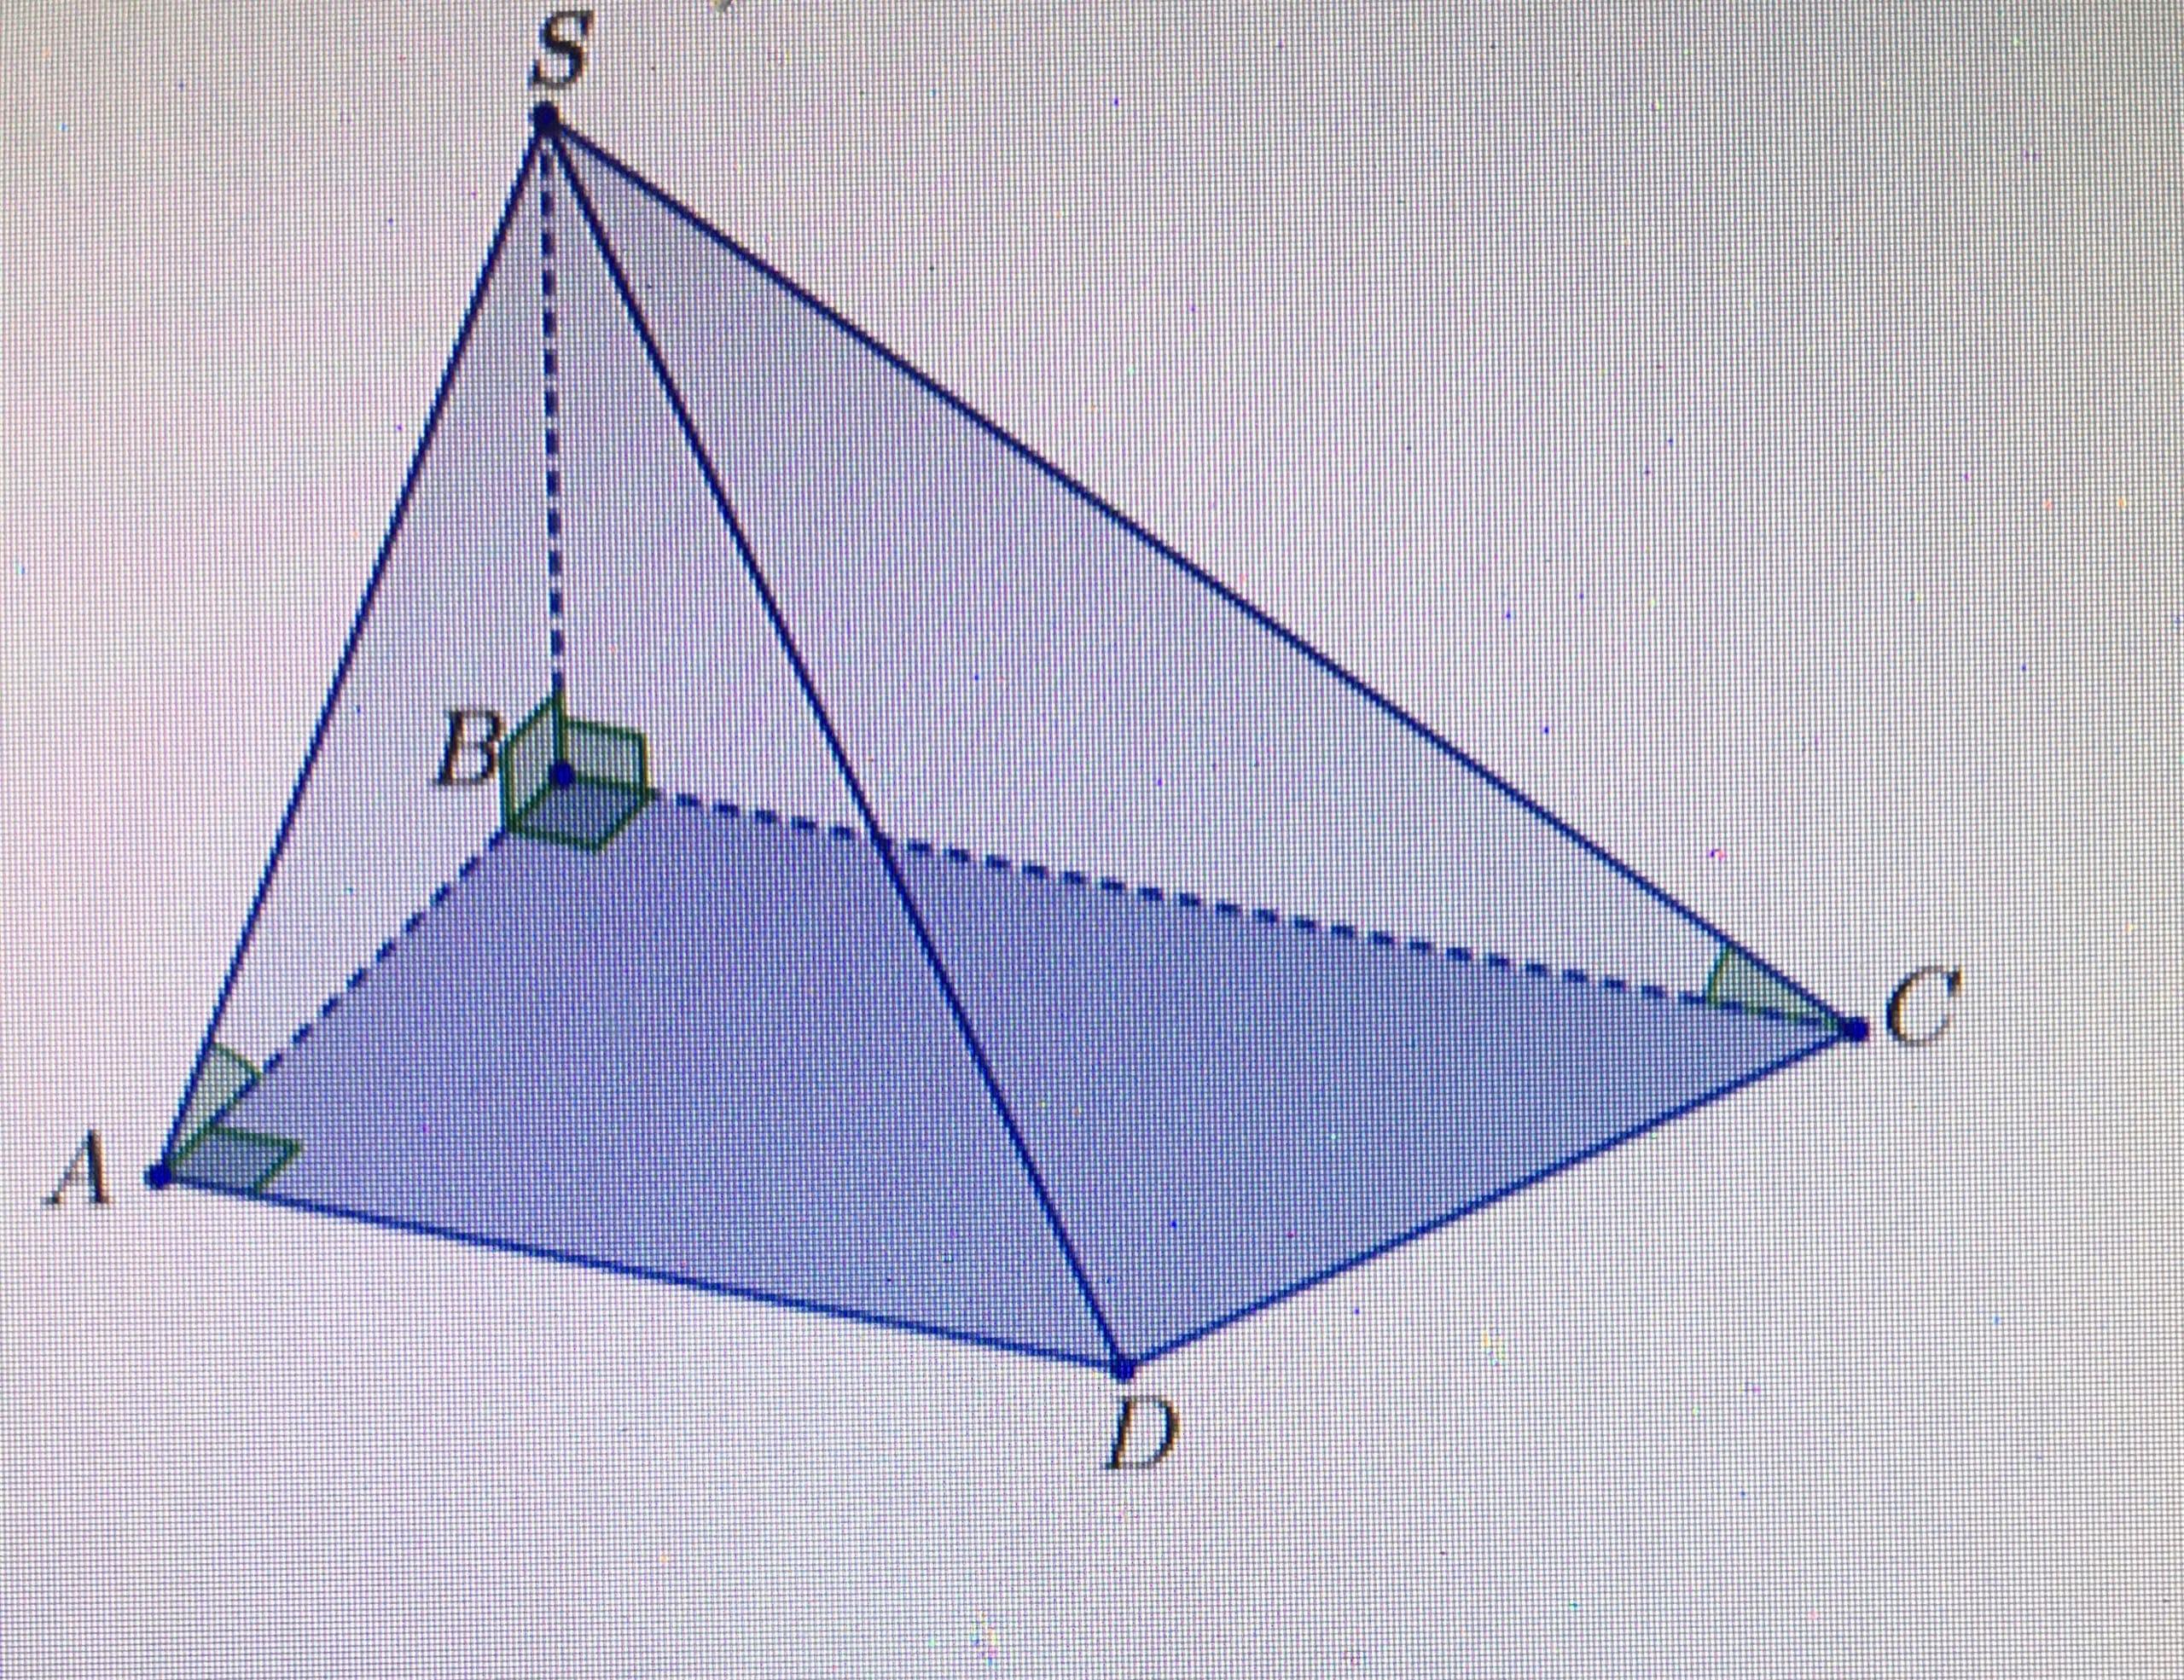 Пирамида прямоугольный треугольник 60 градус. Прямоугольная пирамида SABCD. Прямоугольная четырехугольная пирамида. Наклонная четырехугольная пирамида. Прямоугольная треугольная пирамида.